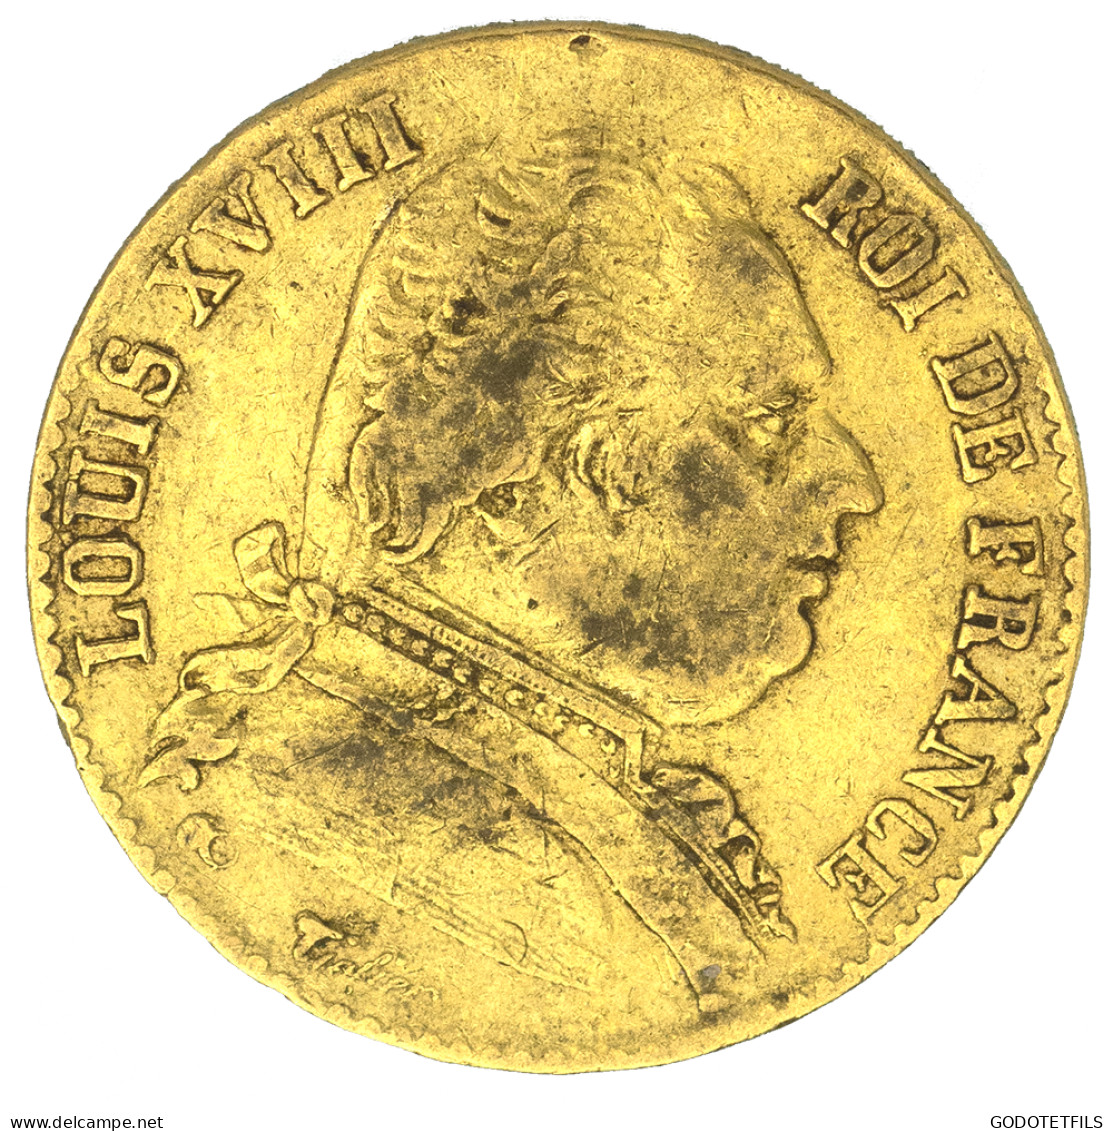 Louis XVIII-20 Francs 1814 Bayonne - 20 Francs (gold)